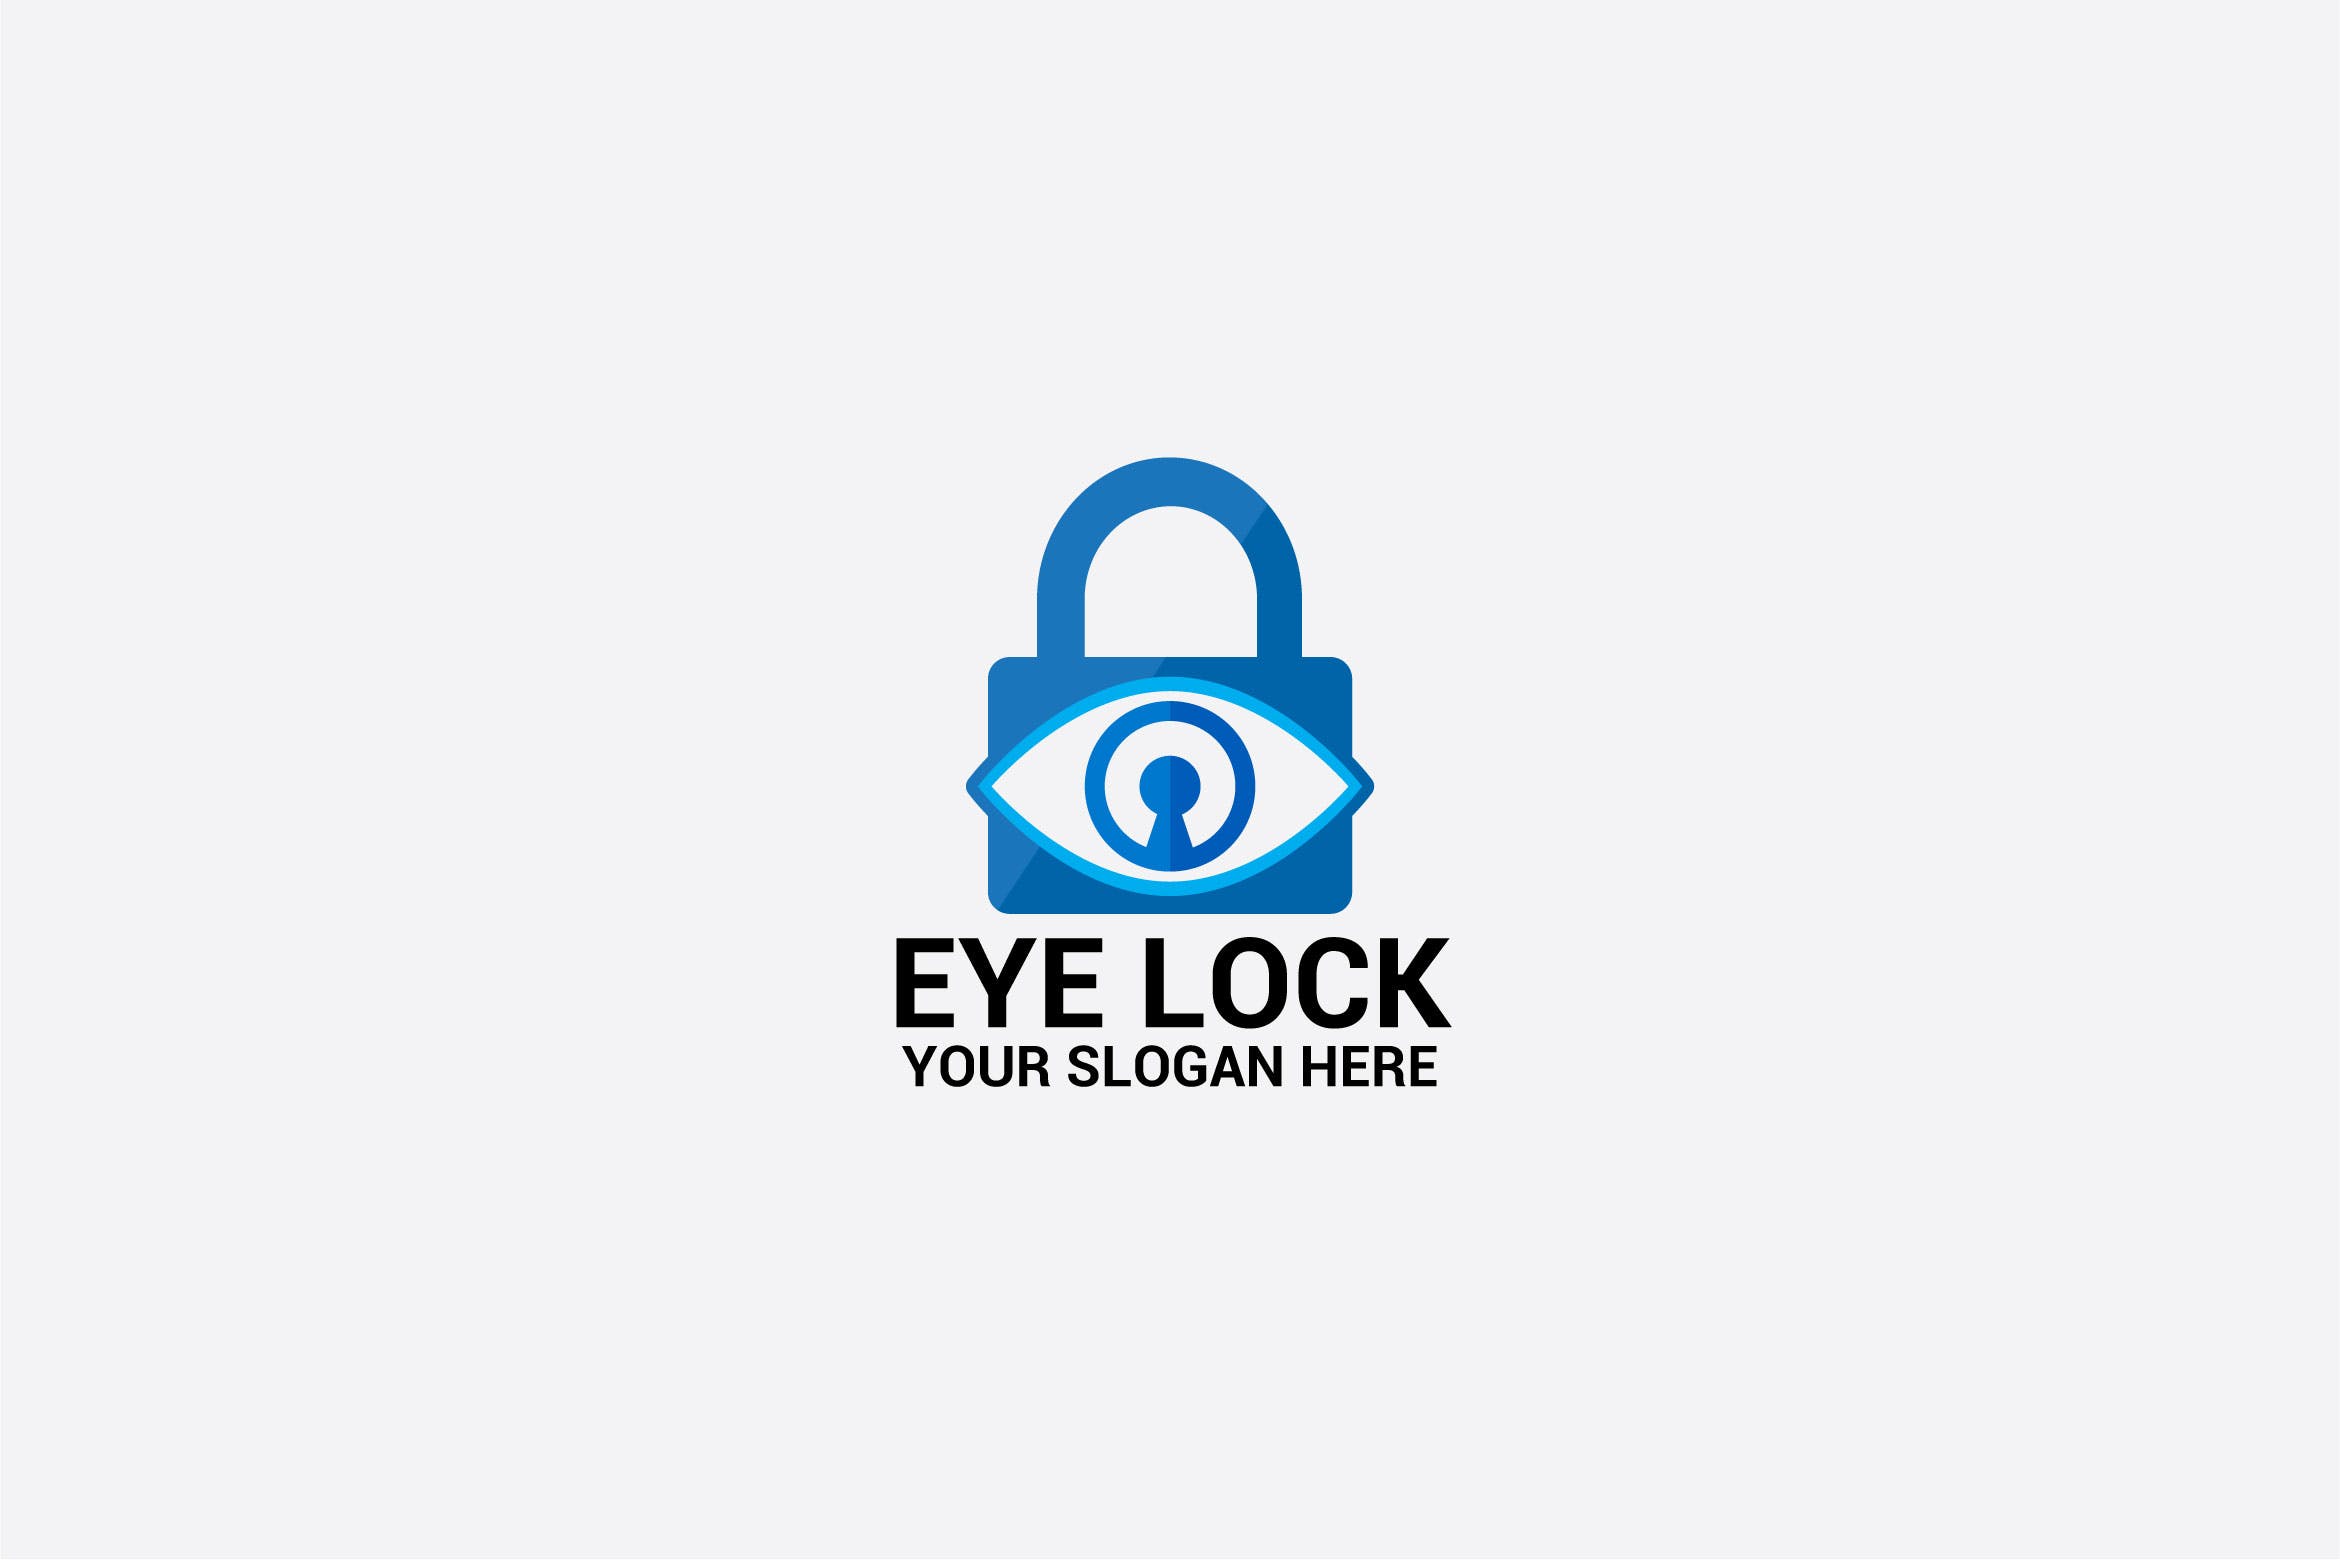 安保安全服务企业品牌Logo设计模板 EYE LOCK插图